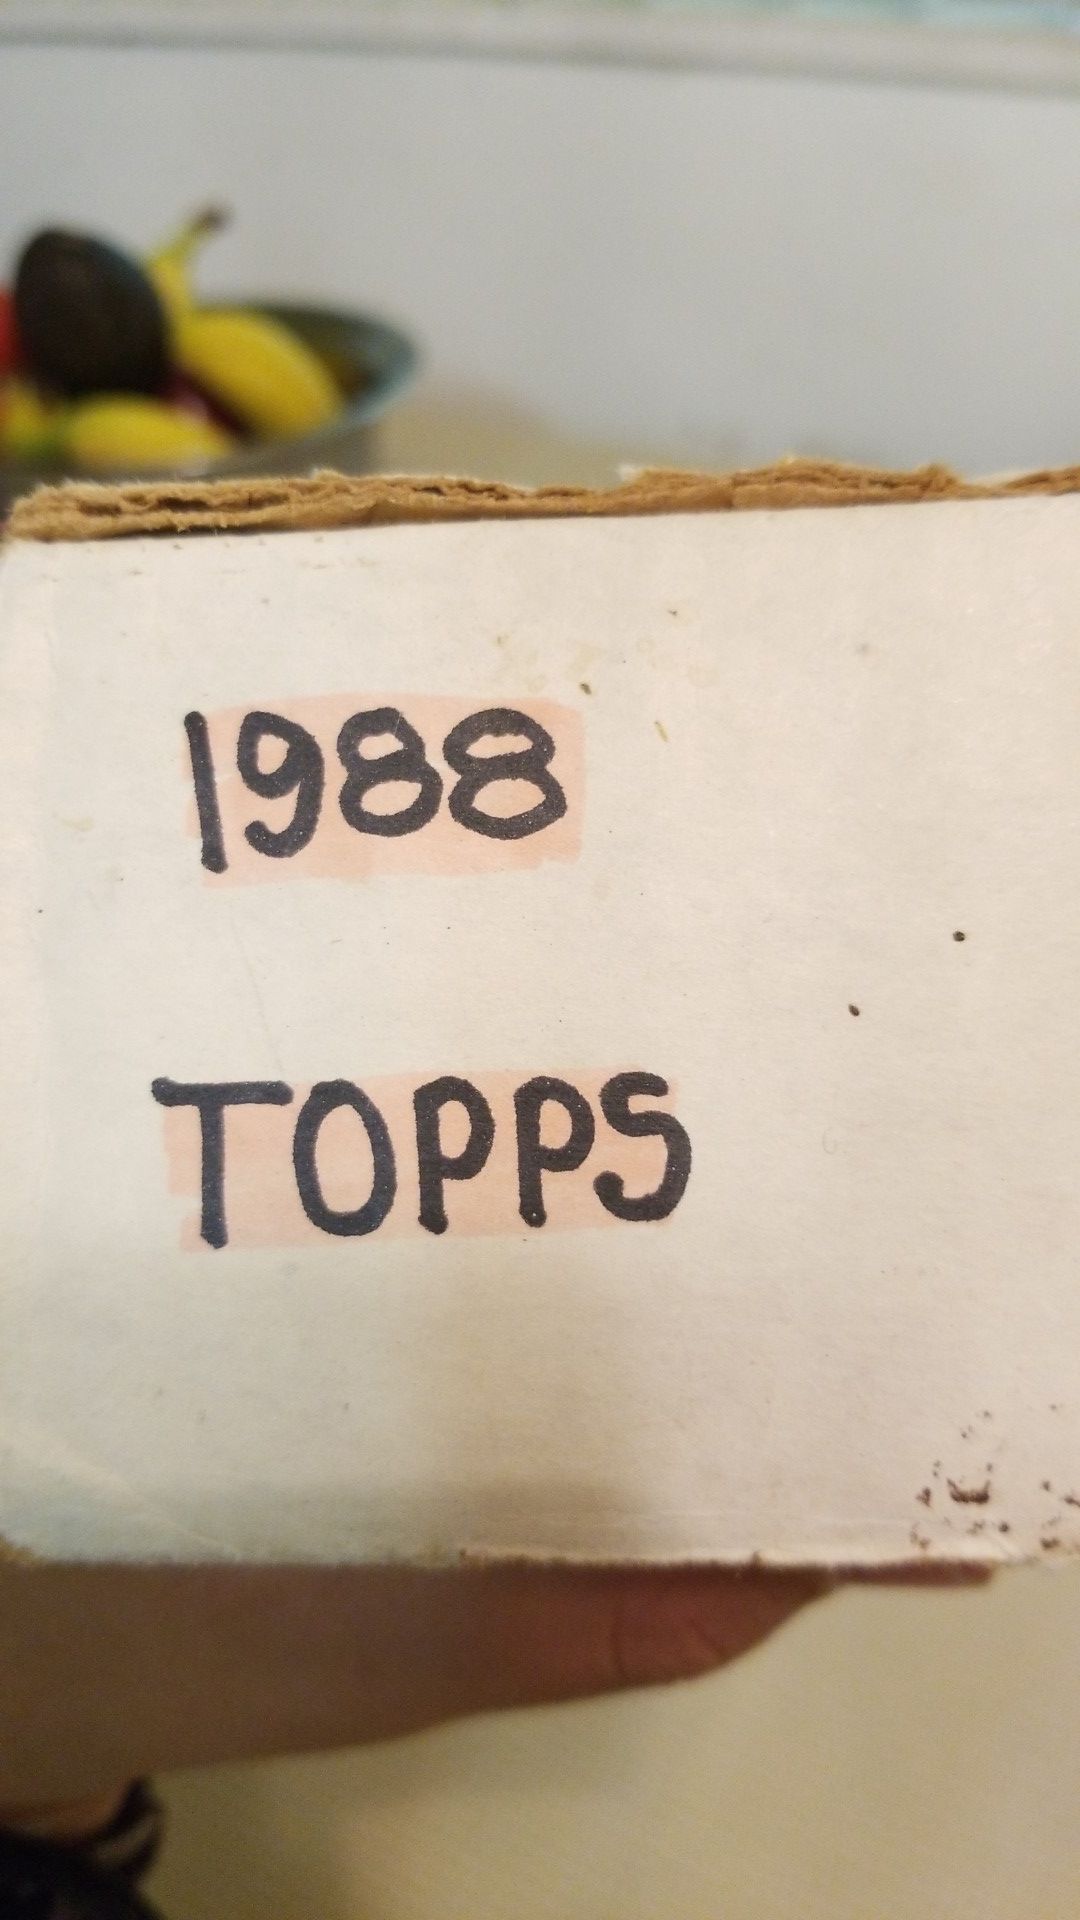 Topps 1988 baseball cards